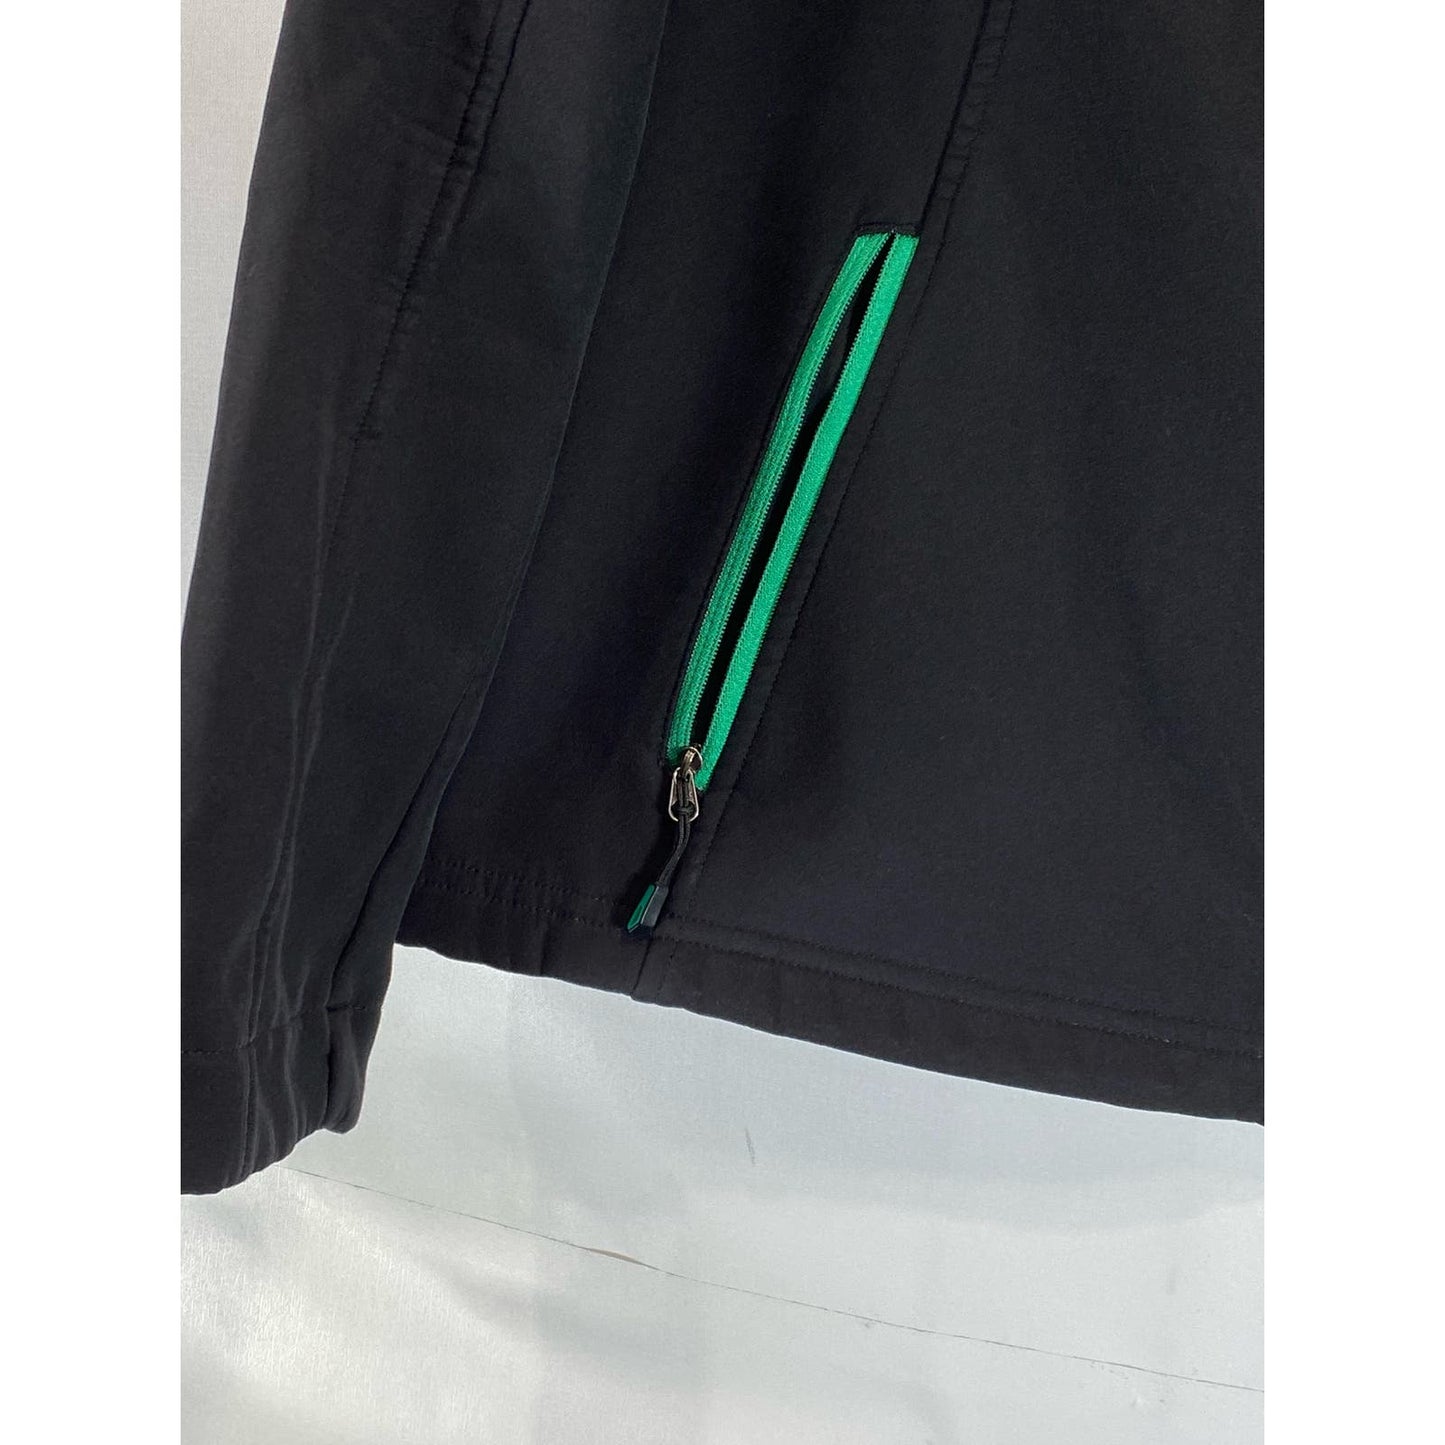 EDDIE BAUER Women's Black/Green Trim Softshell Stand Collar Zip-Up Jacket SZ L